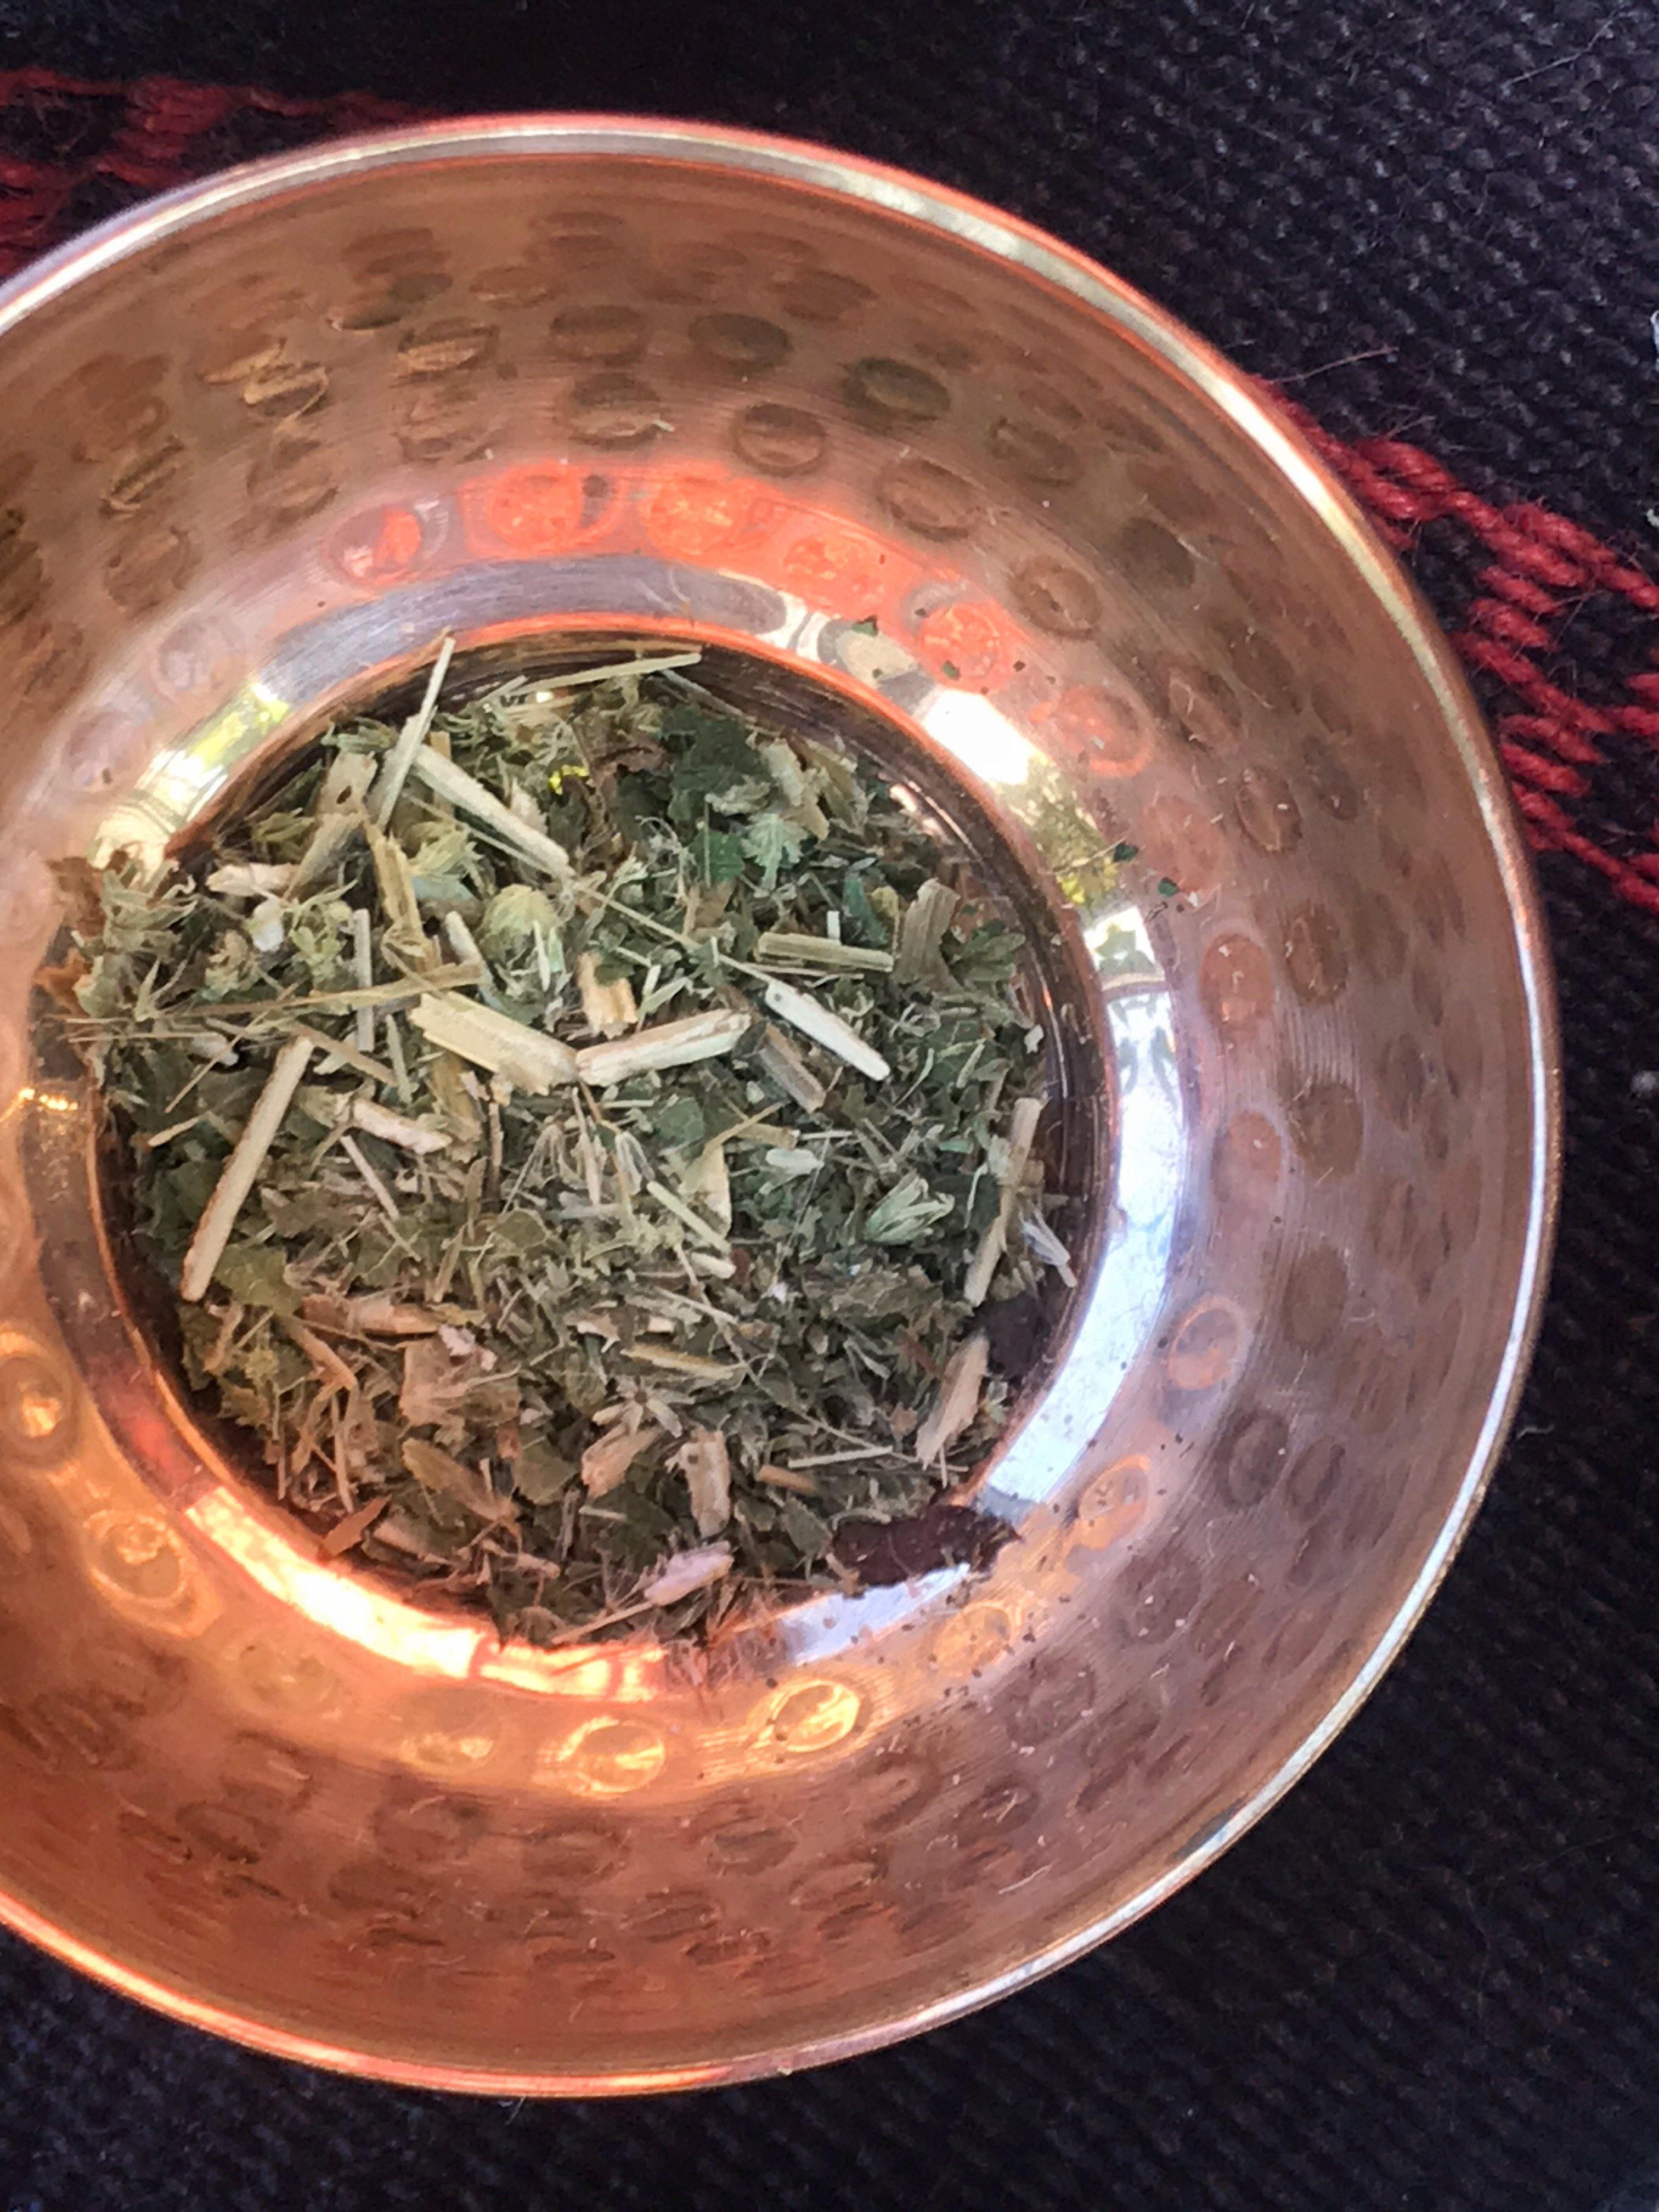 Rue (Ruta graveolens) Organic - Witching Herbs - Keven Craft Rituals